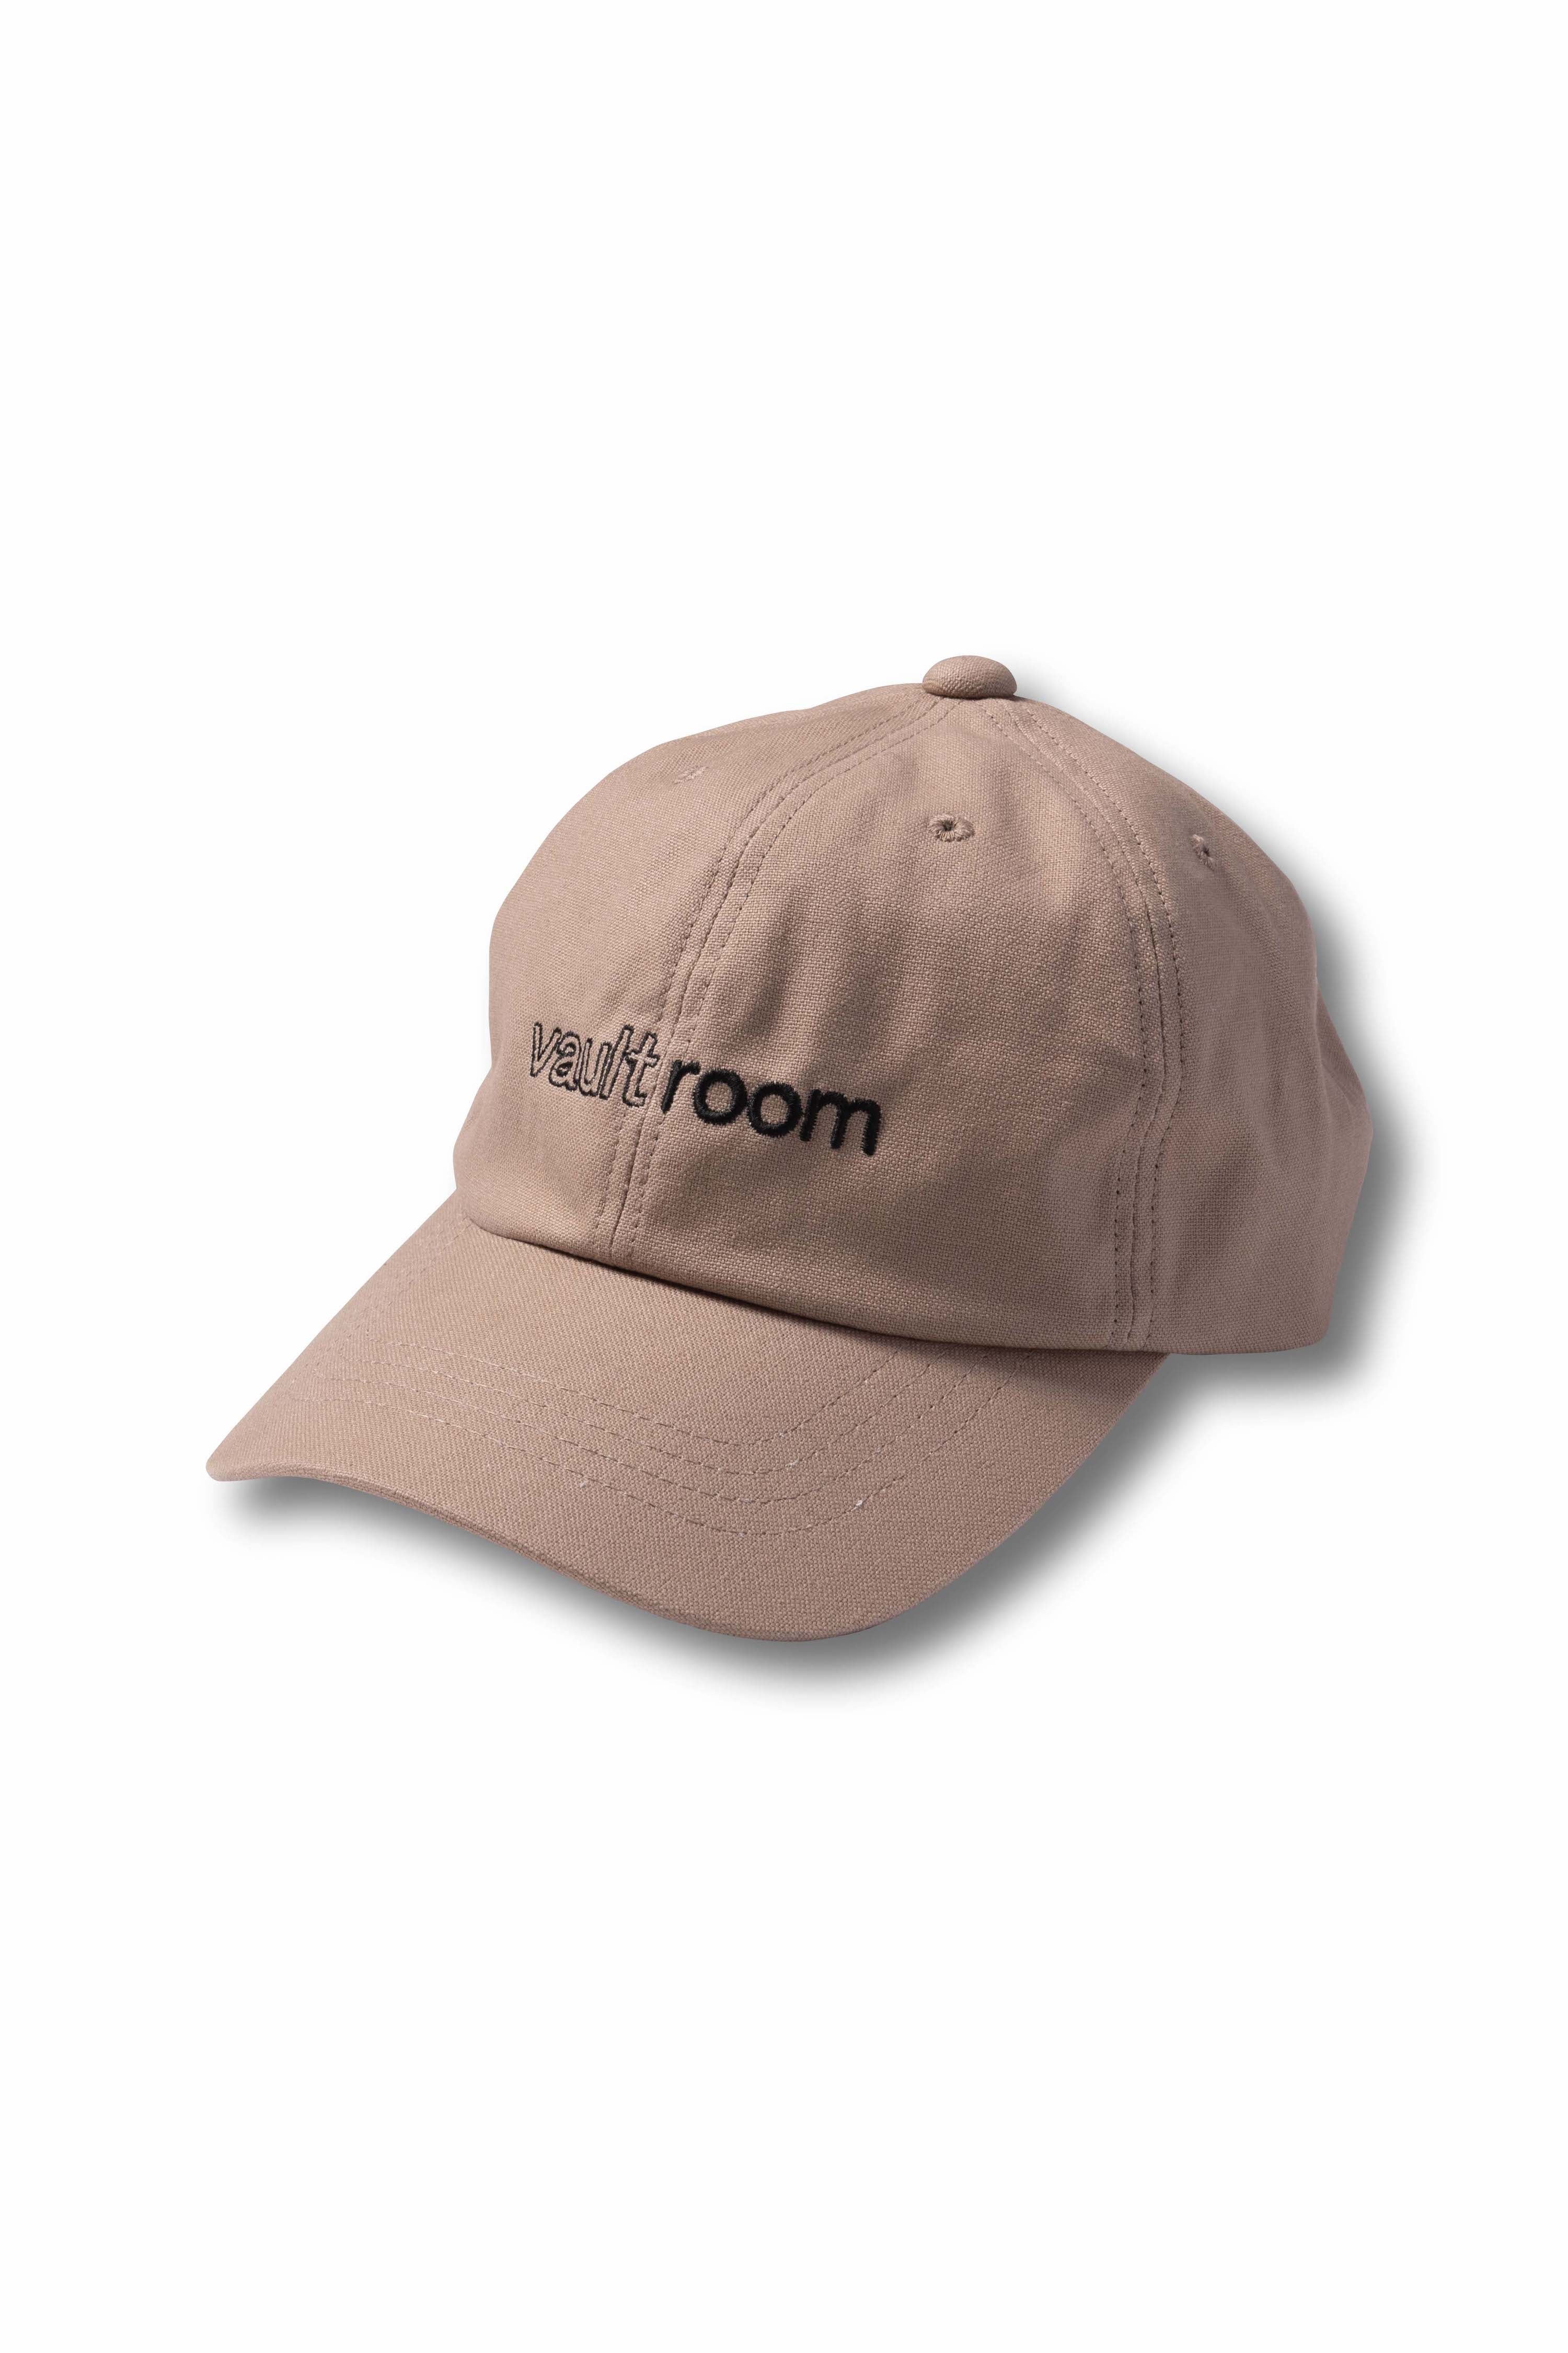 vaultroom LOGO CAP / BLK-